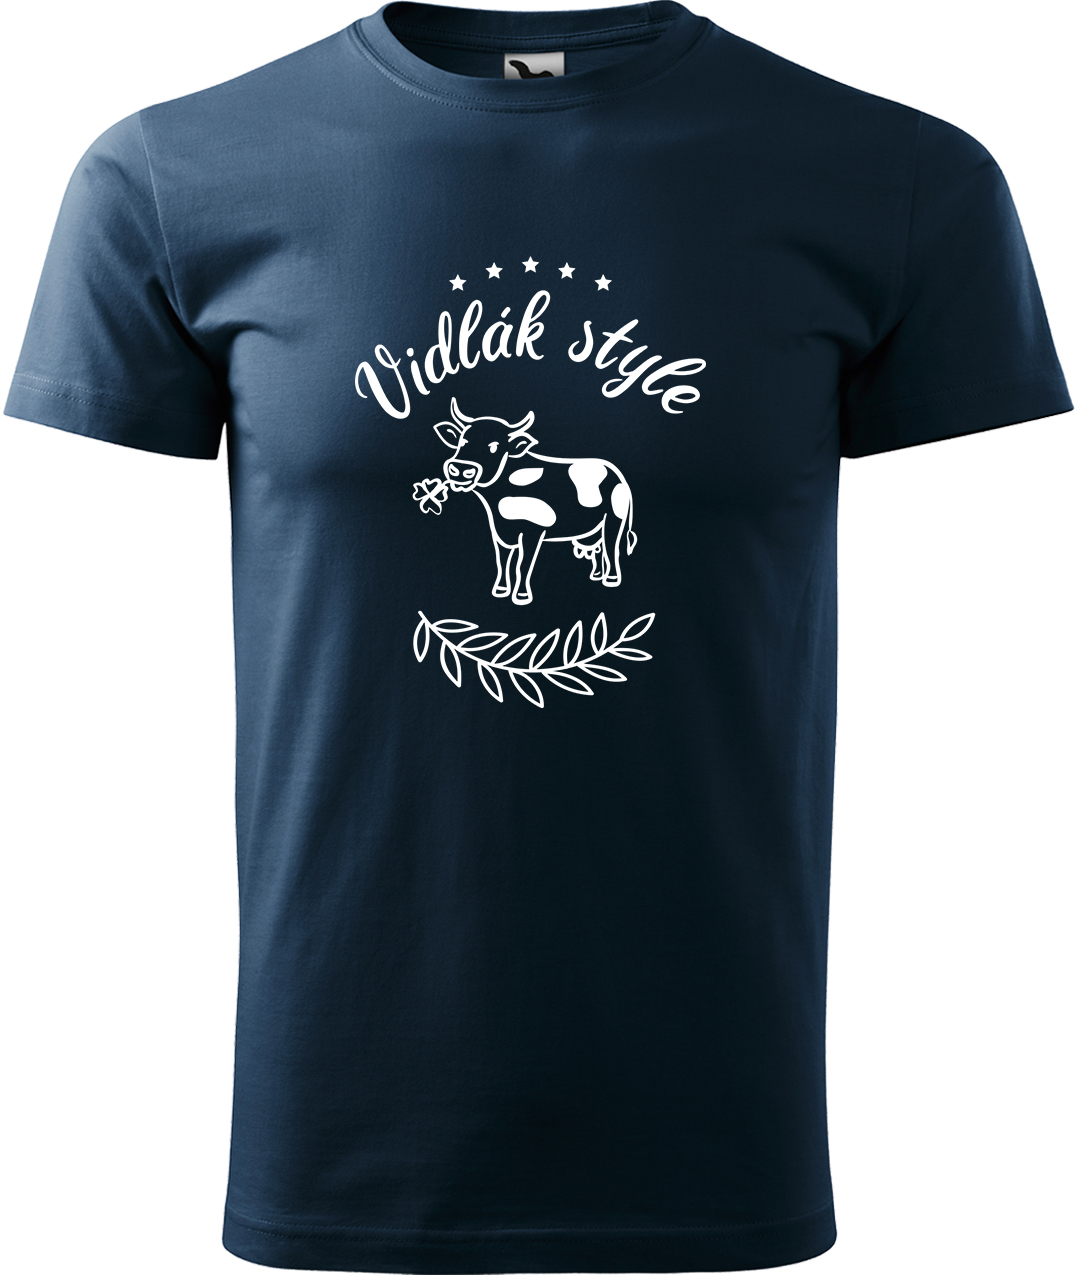 Pánské tričko s krávou - Vidlák style Velikost: L, Barva: Námořní modrá (02), Střih: pánský